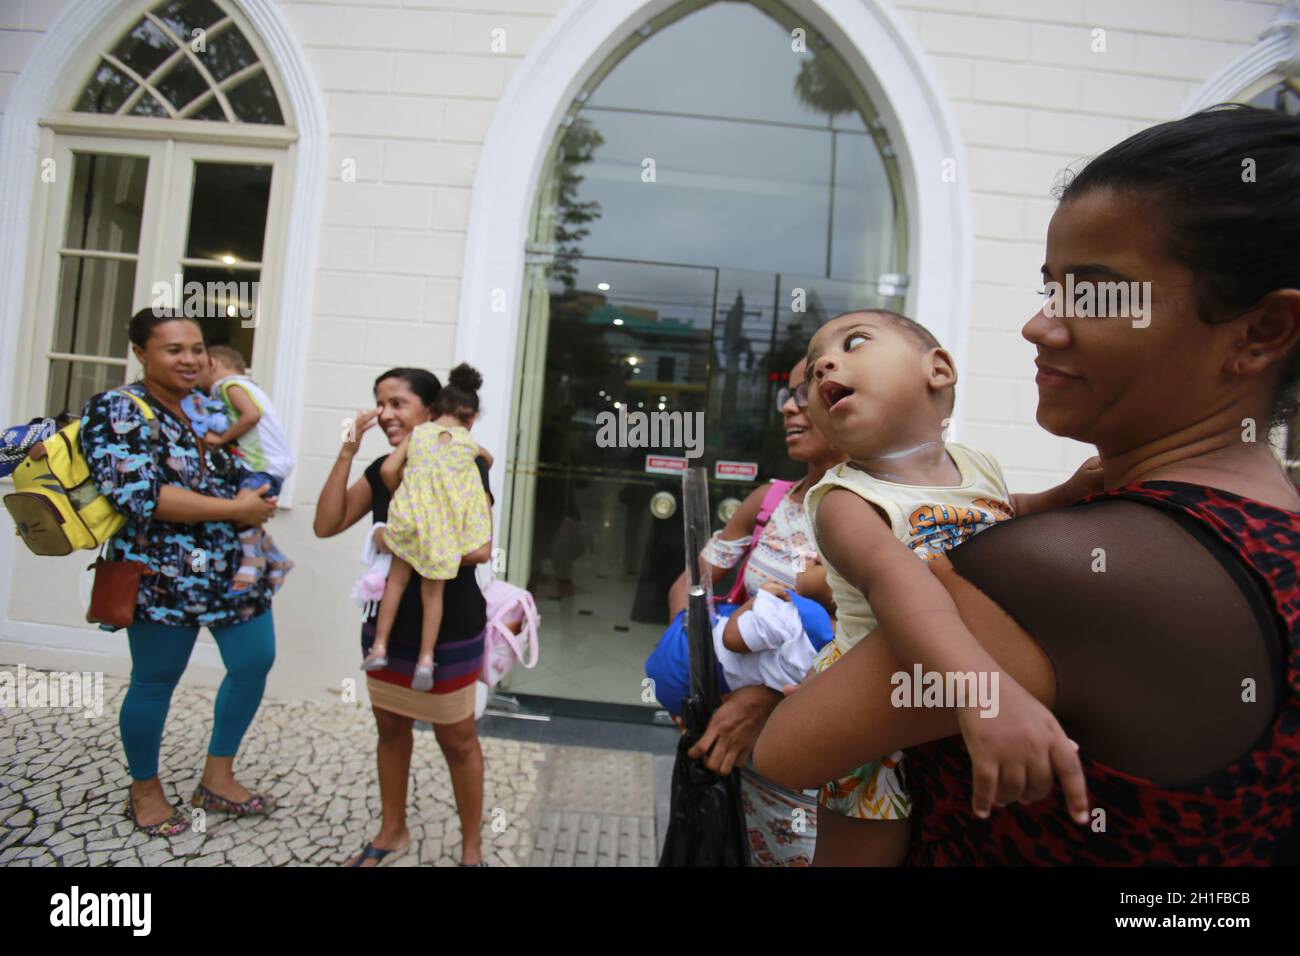 salvador, bahia / brésil - 17 avril 2018 : des enfants atteints de microcéphalie sont vus en quête de justice au Service des poursuites pénales du Salvador. Le dise Banque D'Images